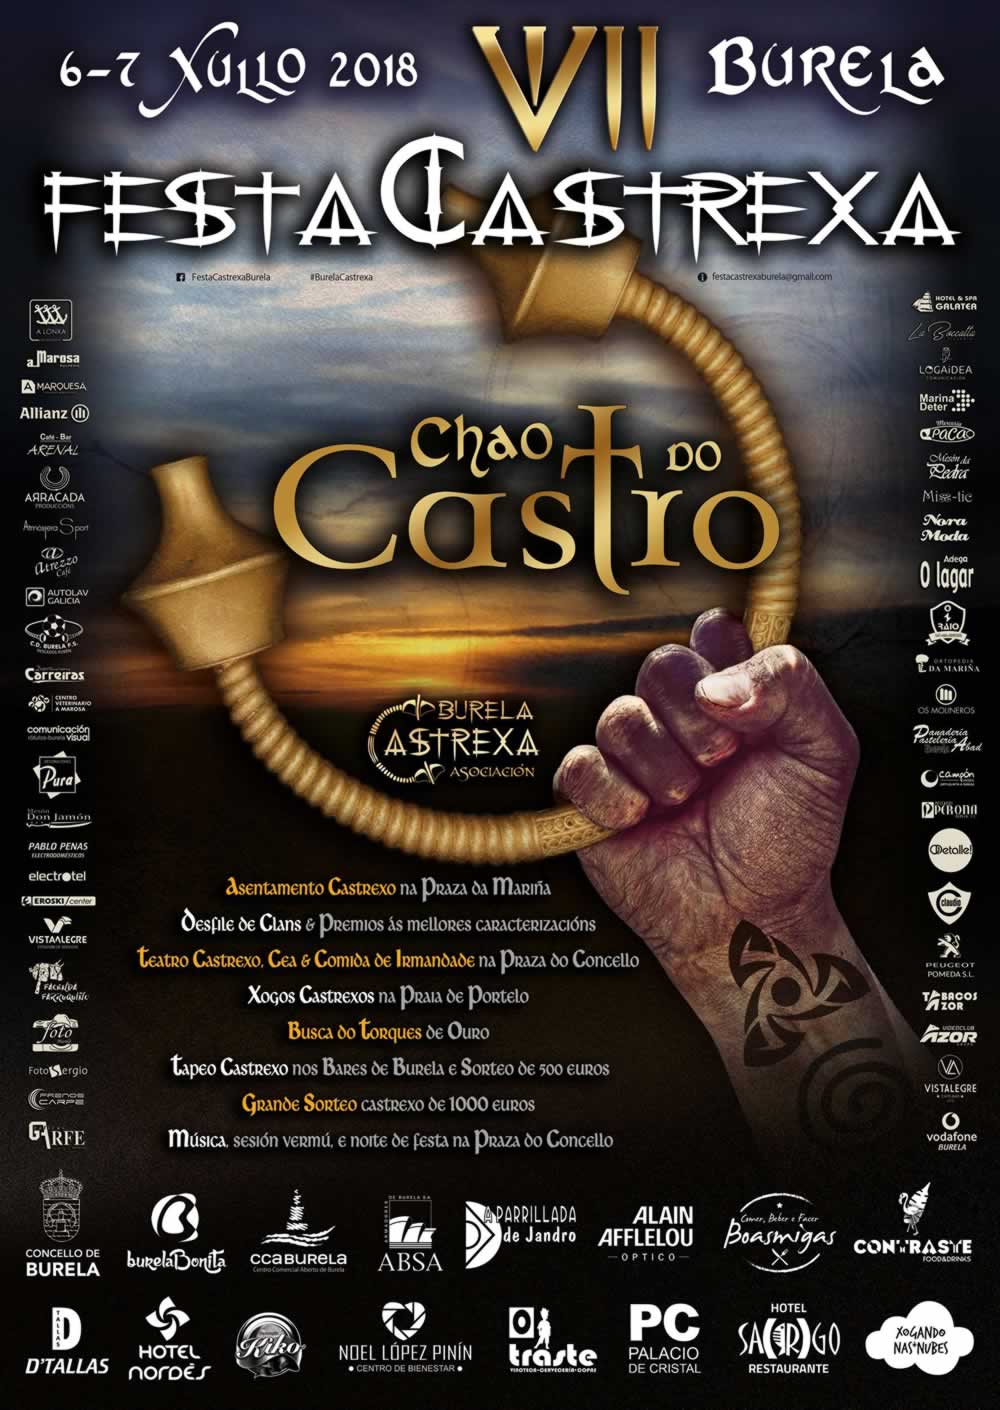 Programa de actividades de la VII Festa Castrexa en Burela, Lugo – 06 y 07 de Julio del 2018